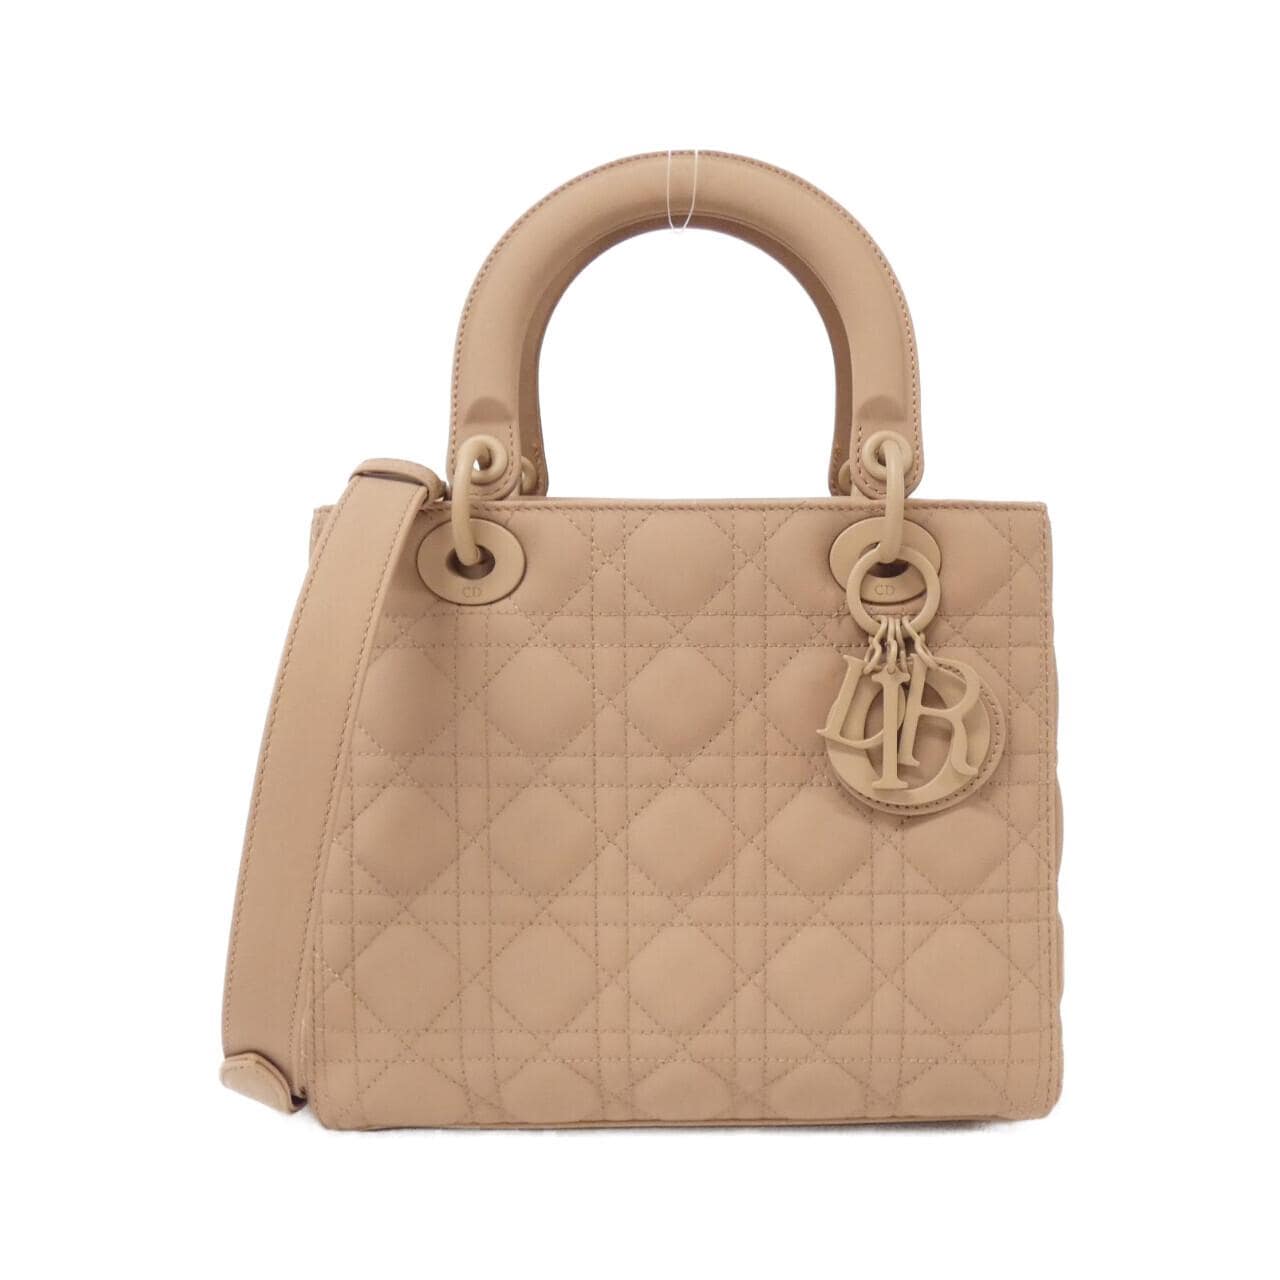 NB - Luxury Bags - DIR - 215 | Miss dior bag, Christian dior bags, Dior bag